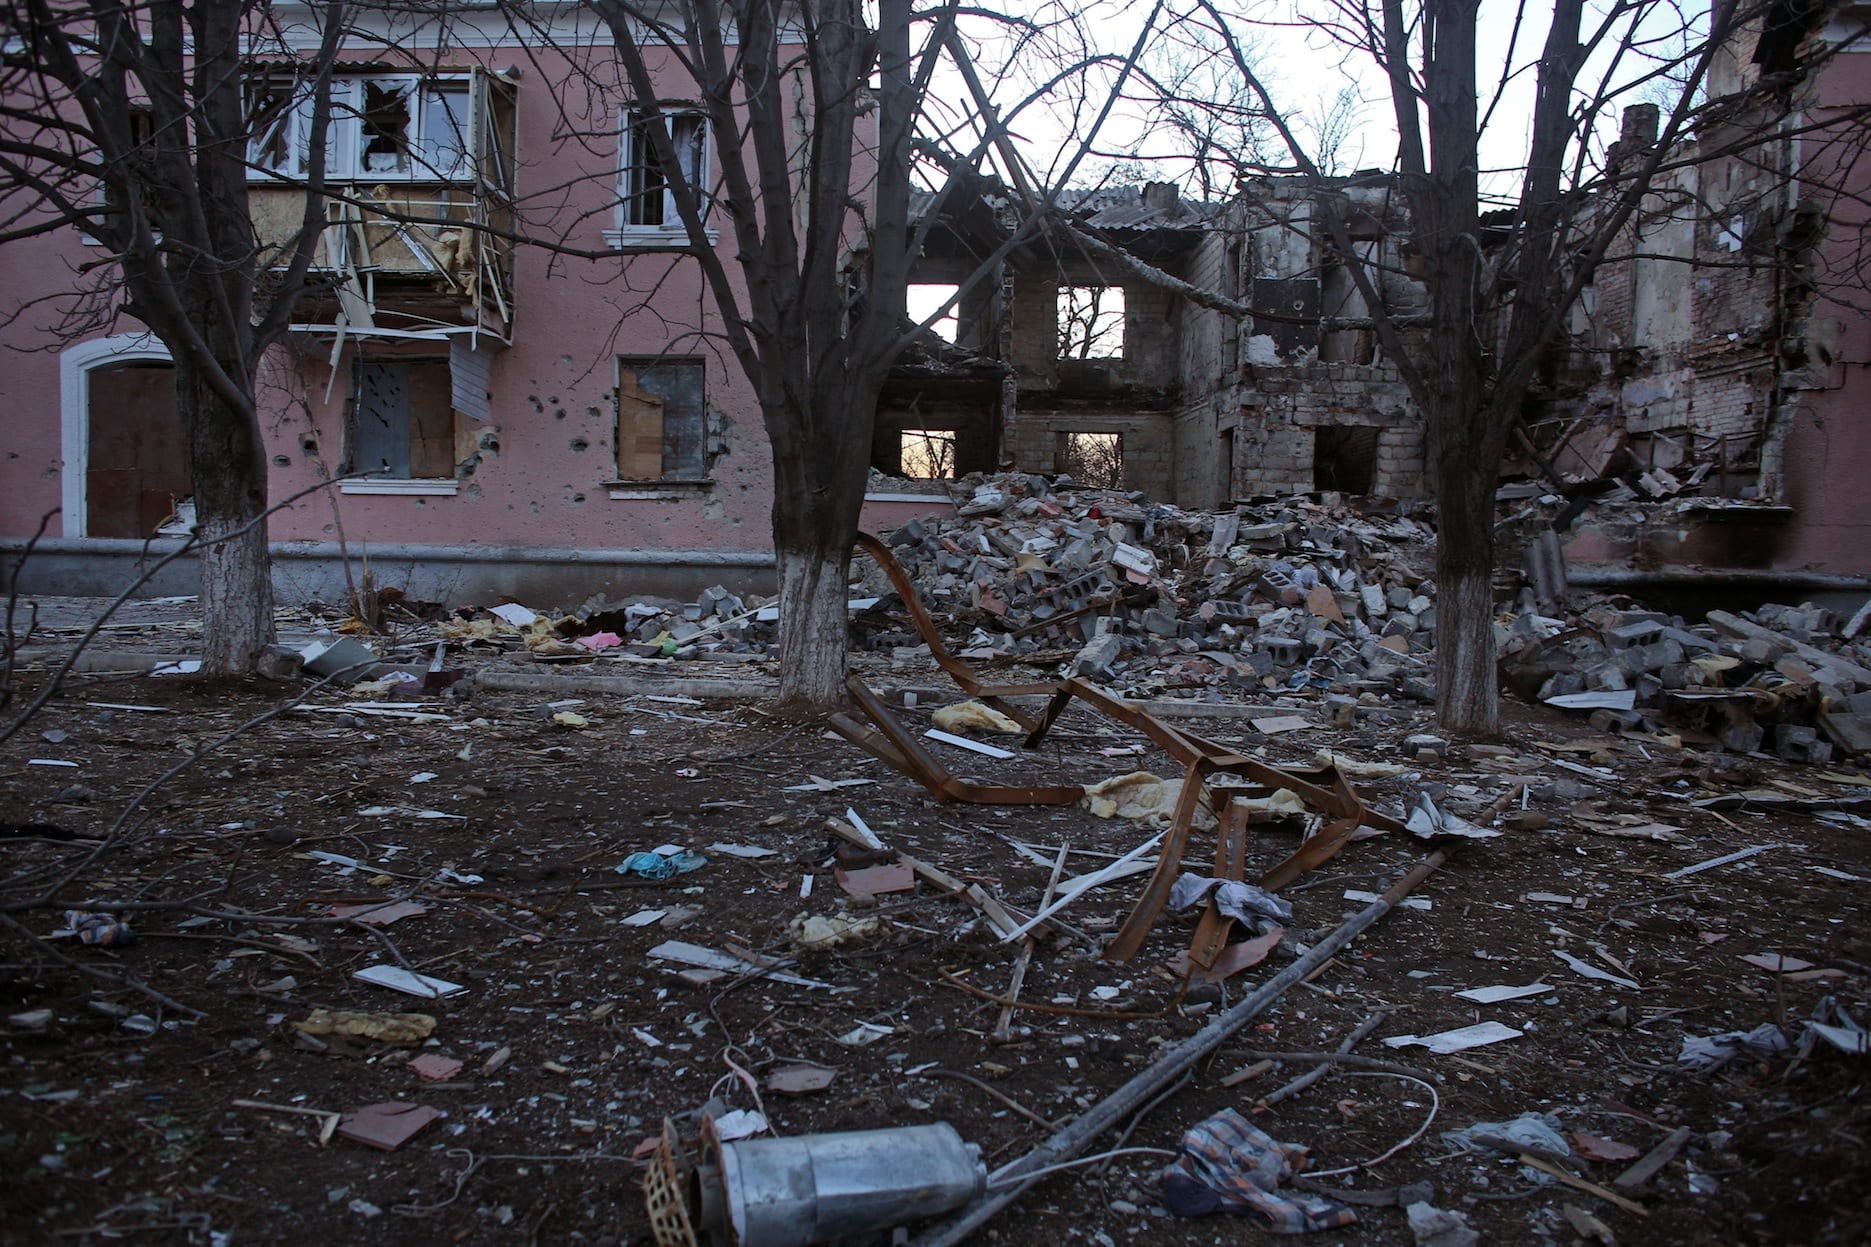 Destructions dans le village de Mironovka, à quelques kilomètres de Debalsteve et de la ligne de front, le 24 février 2015 / ©Rafael Yaghobzadeh